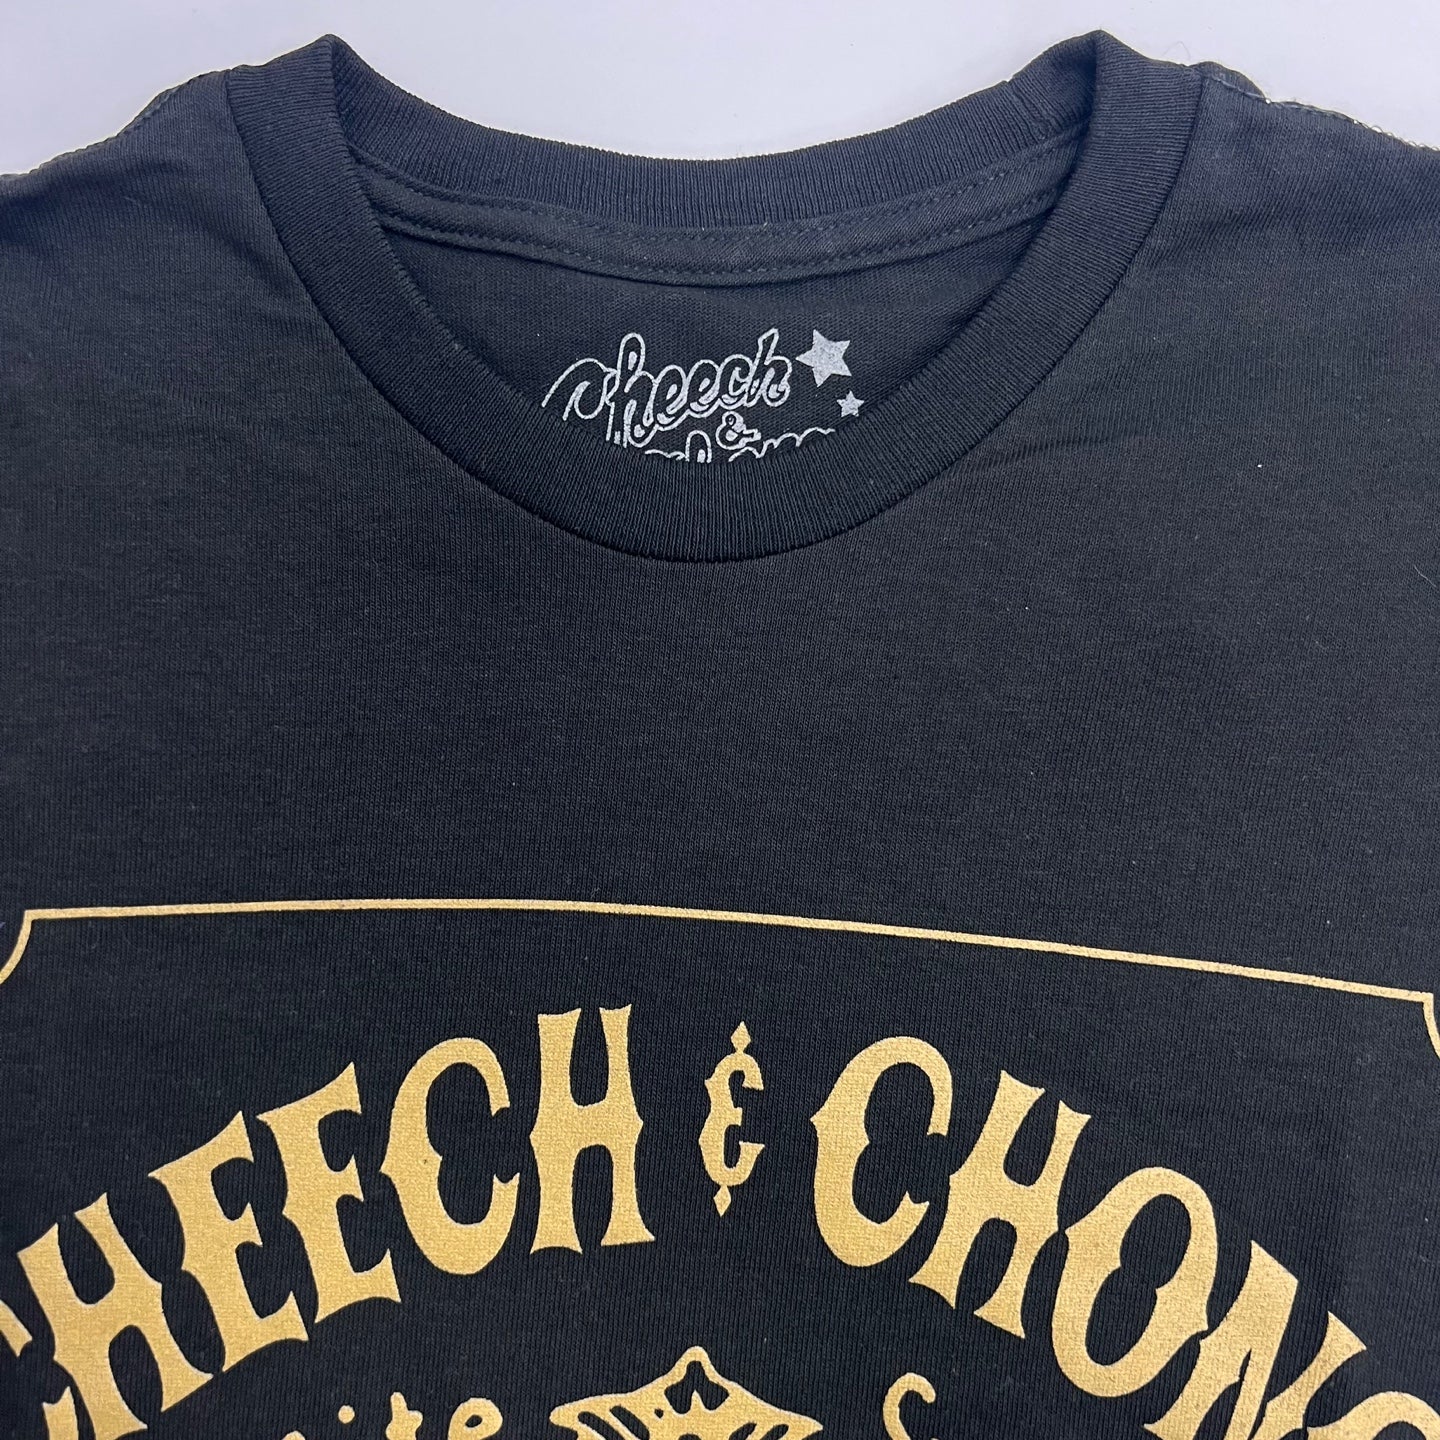 REASON X Cheech & Chong Graphic T-Shirt